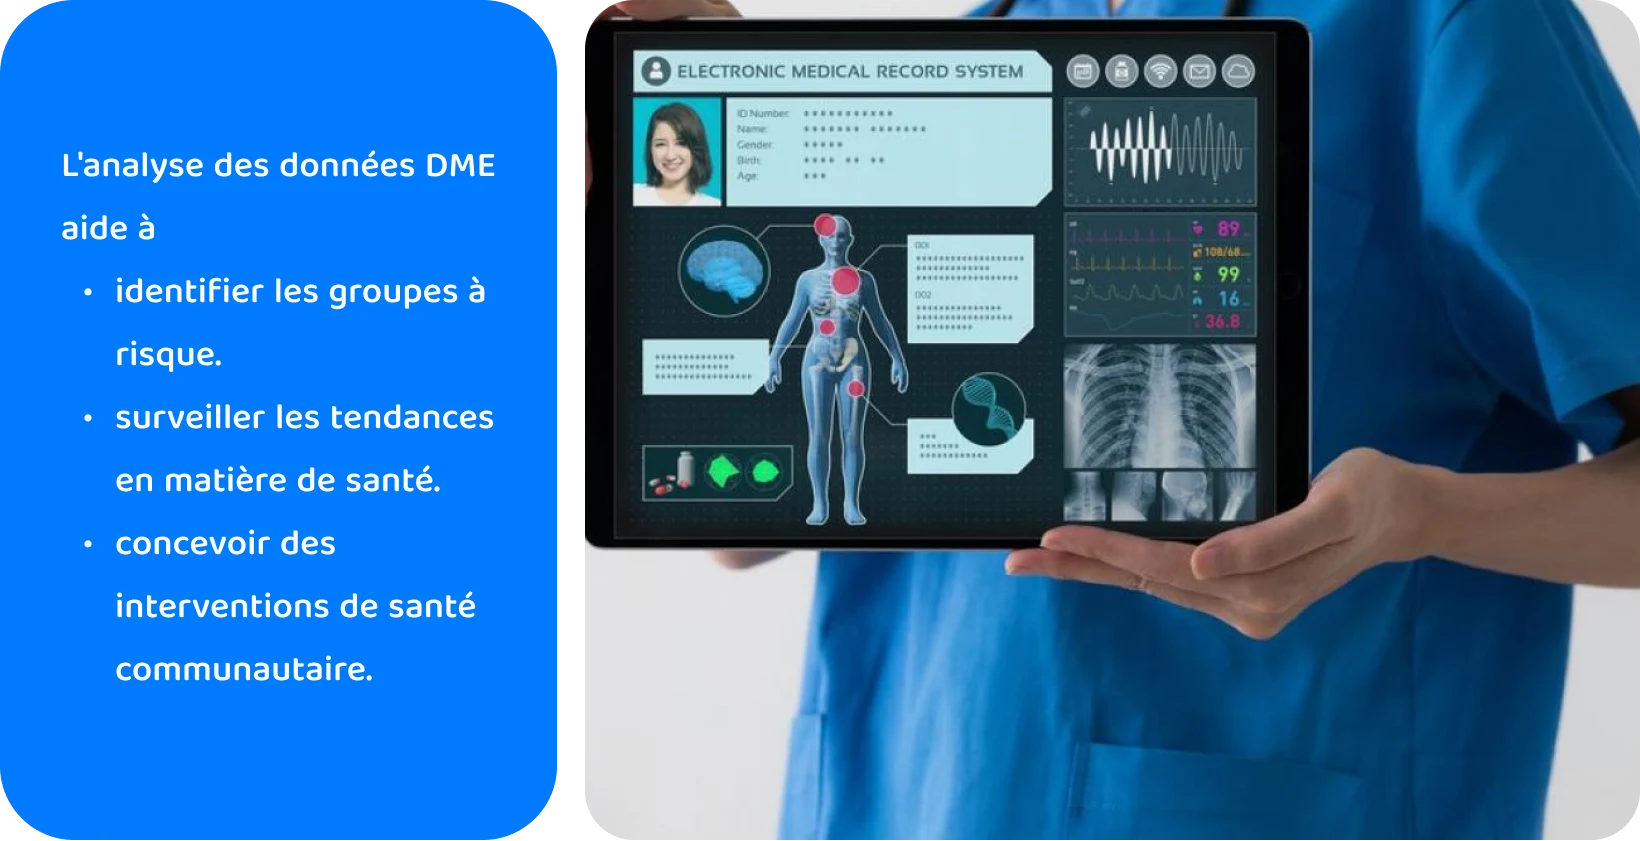 Professionnel de la santé utilisant une tablette avec un système de dossier médical électronique pour analyser les données de santé des patients.